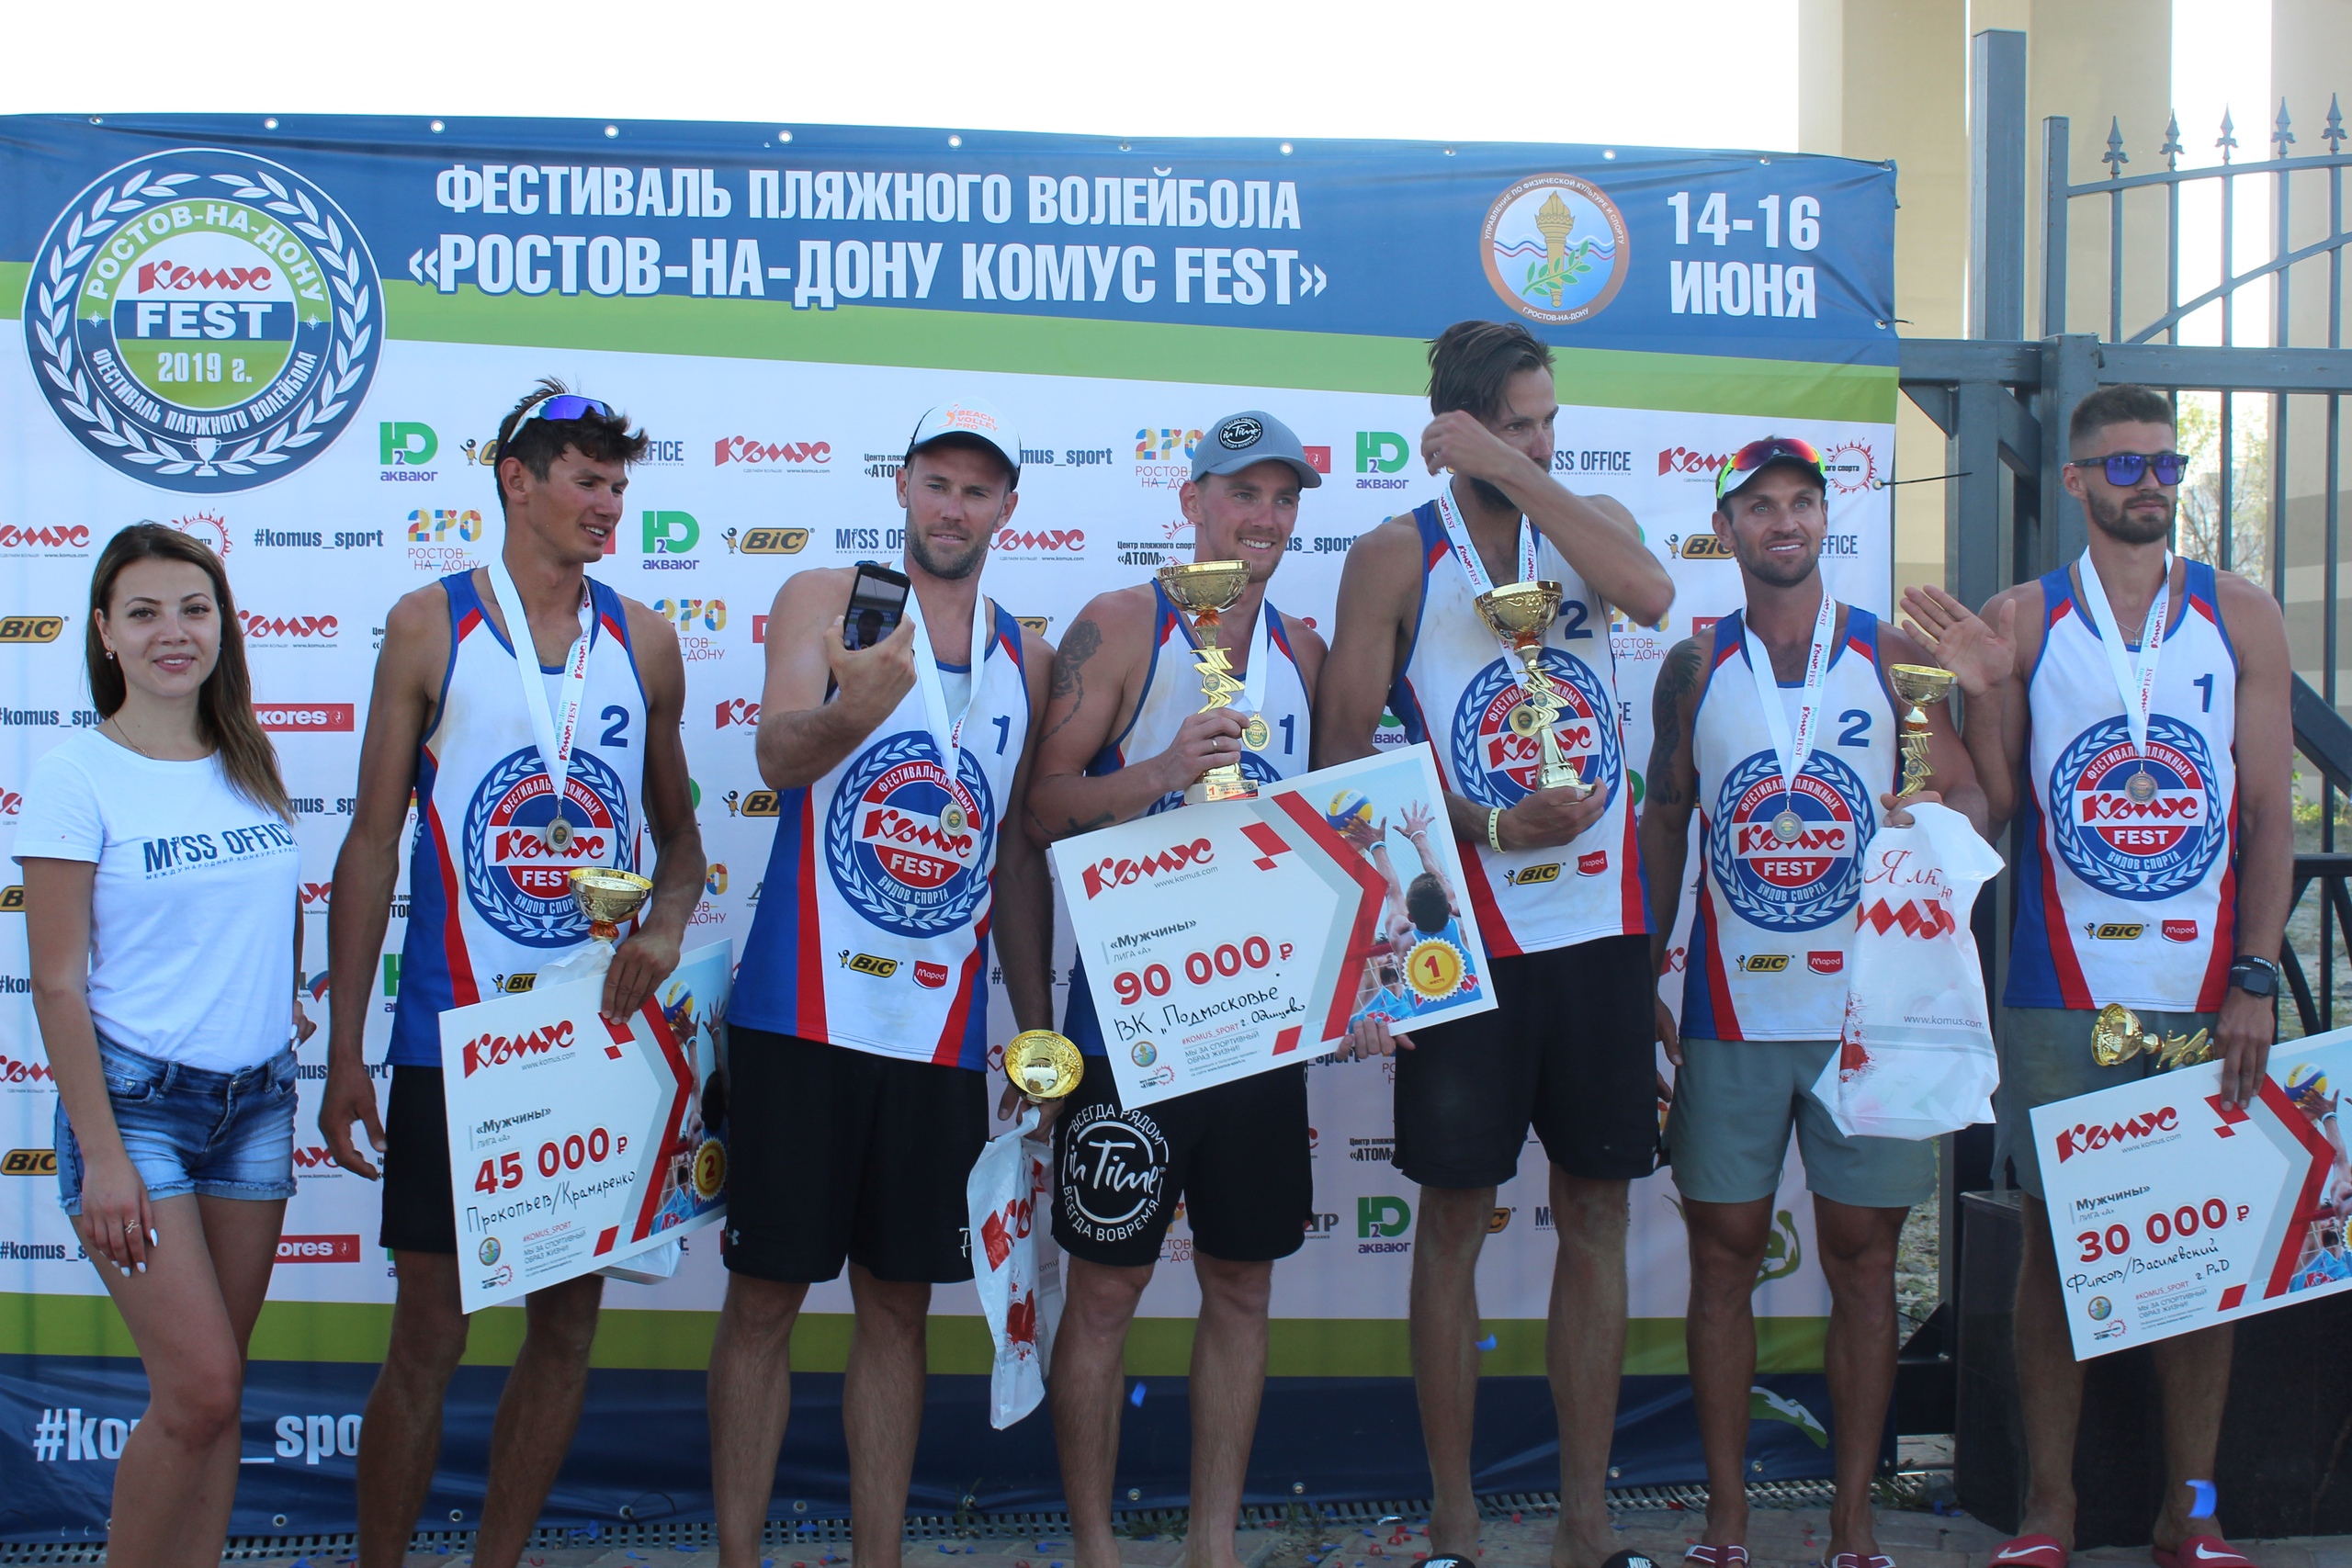 фото: В Ростове-на-Дону вновь пройдёт фестиваль пляжного волейбола